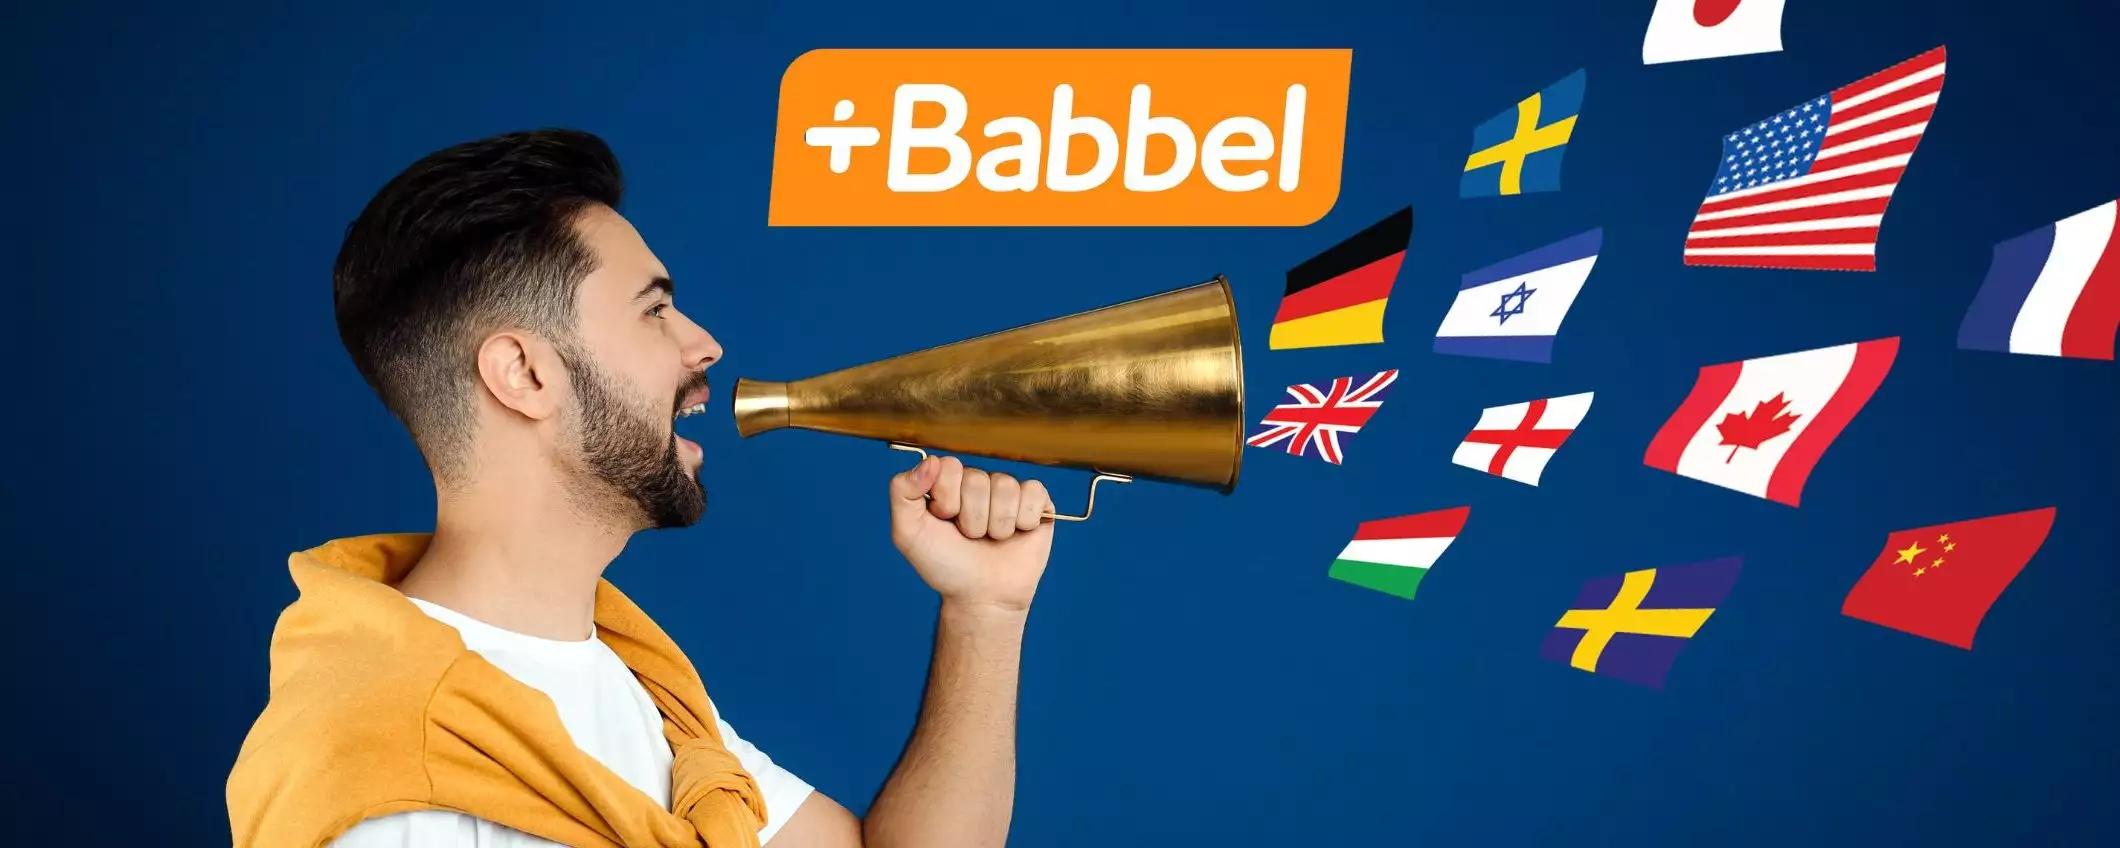 Babbel: piano A VITA in sconto del 60% per imparare tutte le lingue